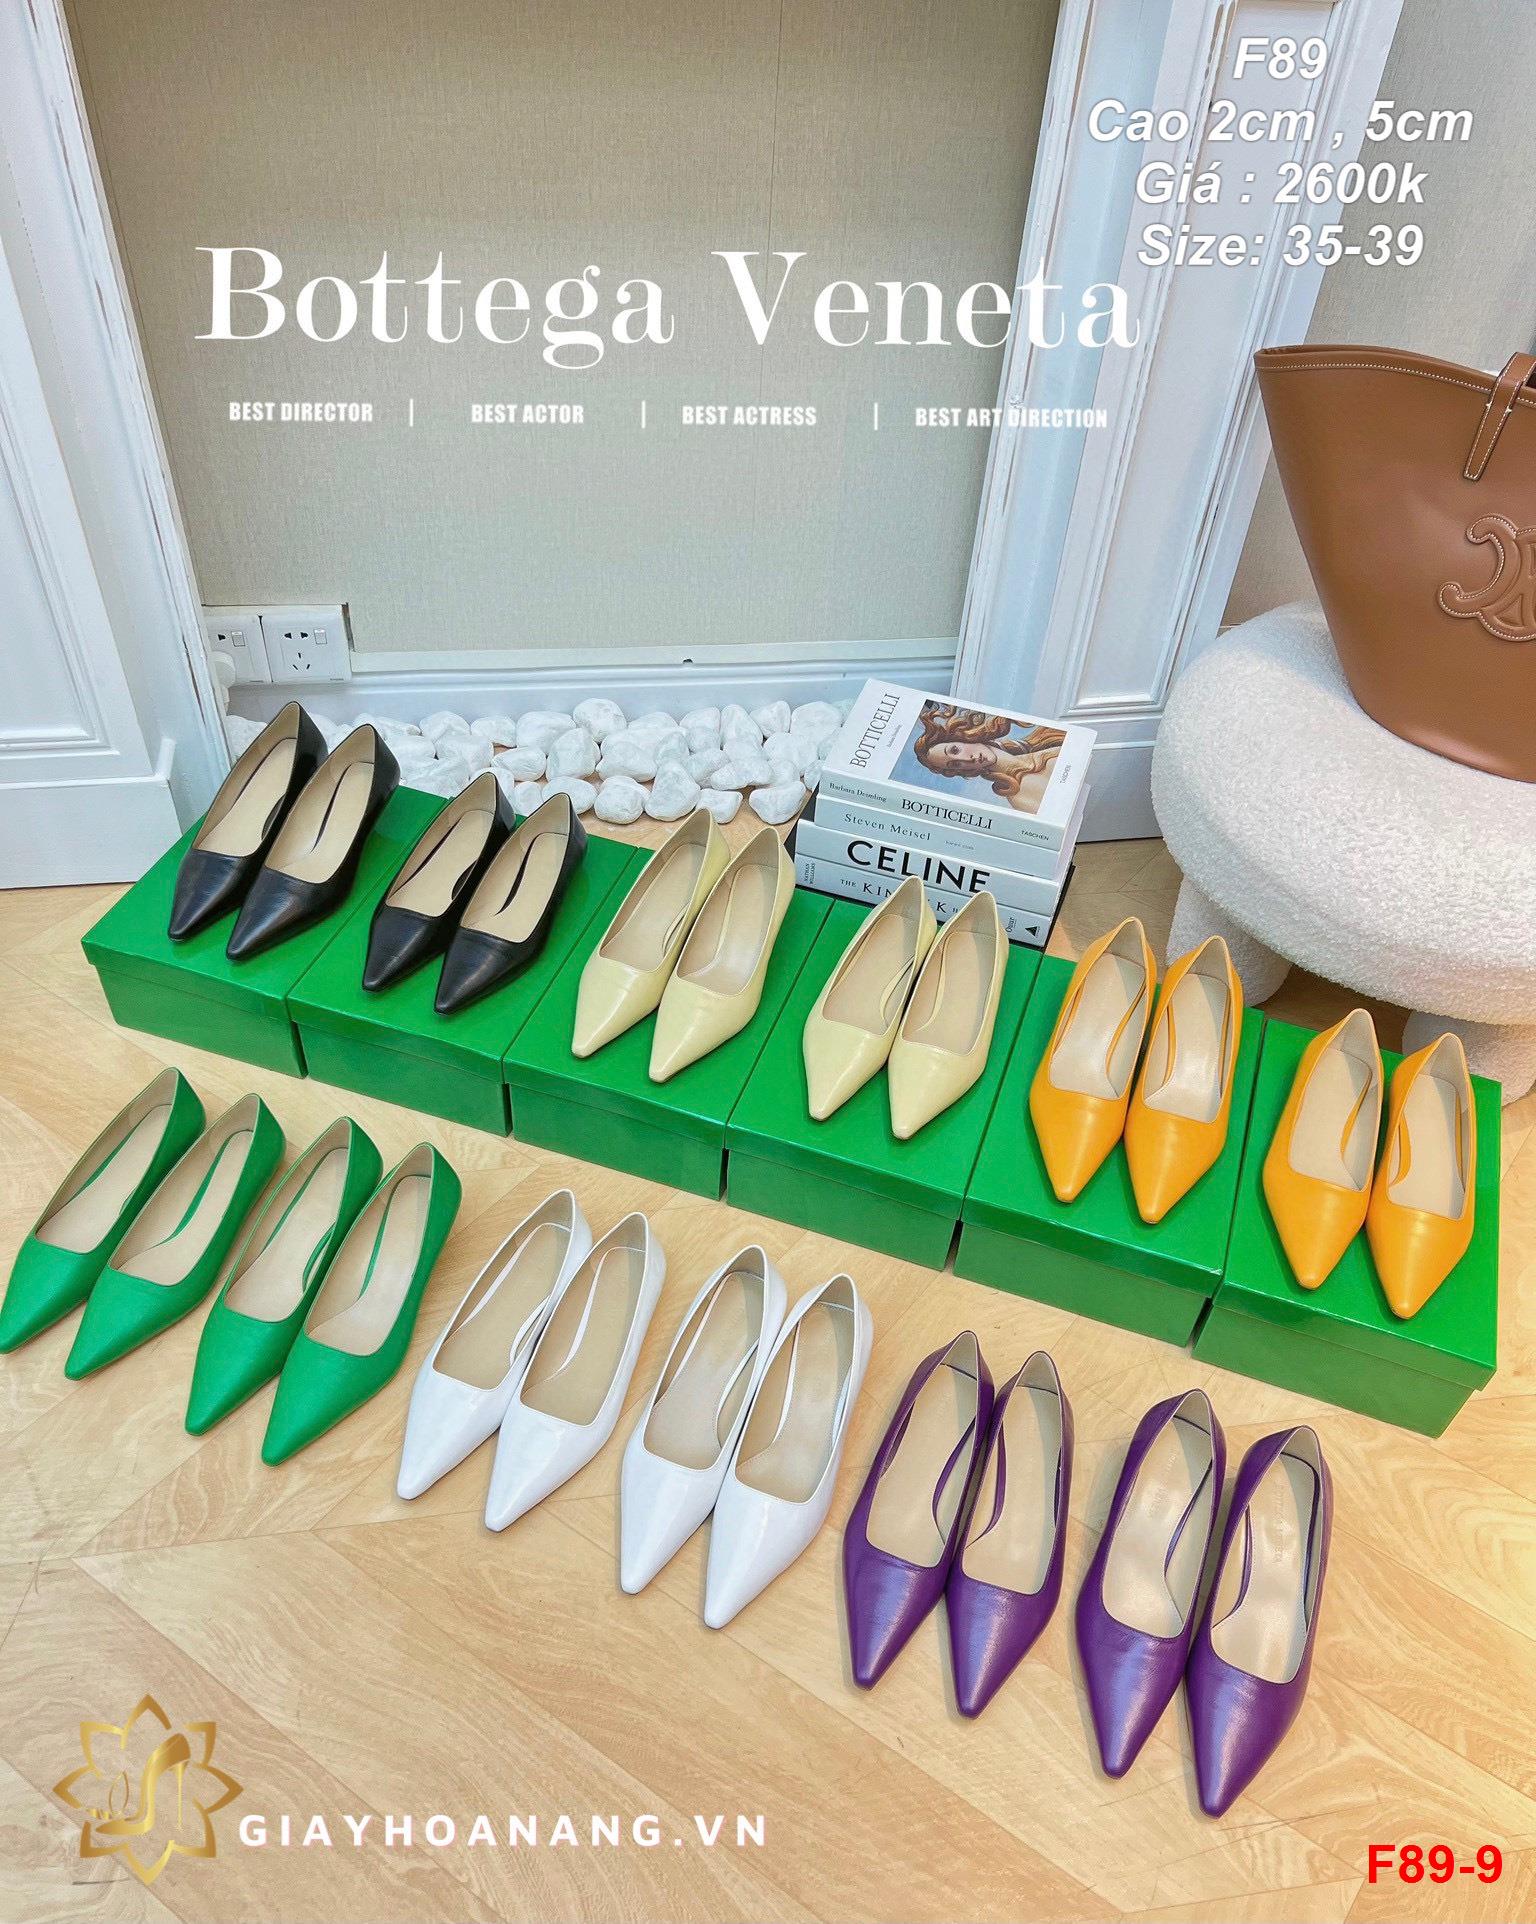 F89-9 Bottega Veneta giày cao 2cm , 5cm siêu cấp